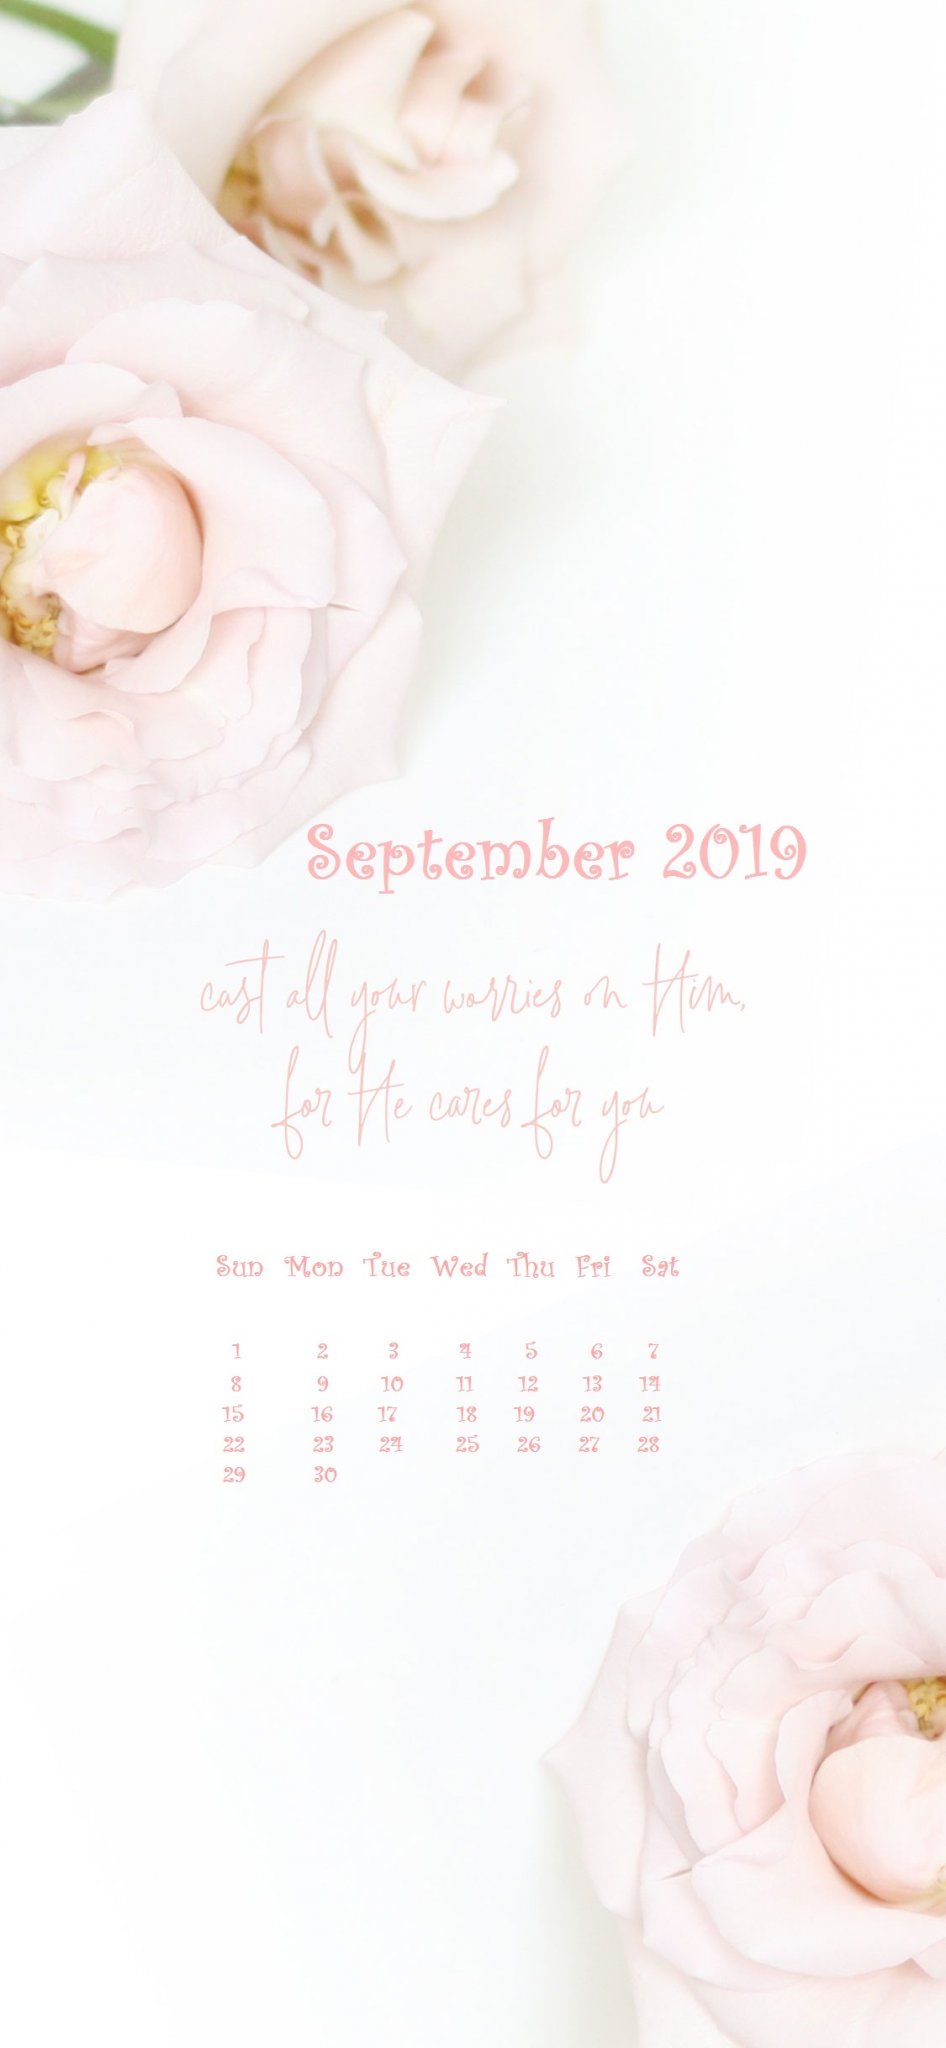 White Flower Design iPhone 2019 September Calendar Wallpaper